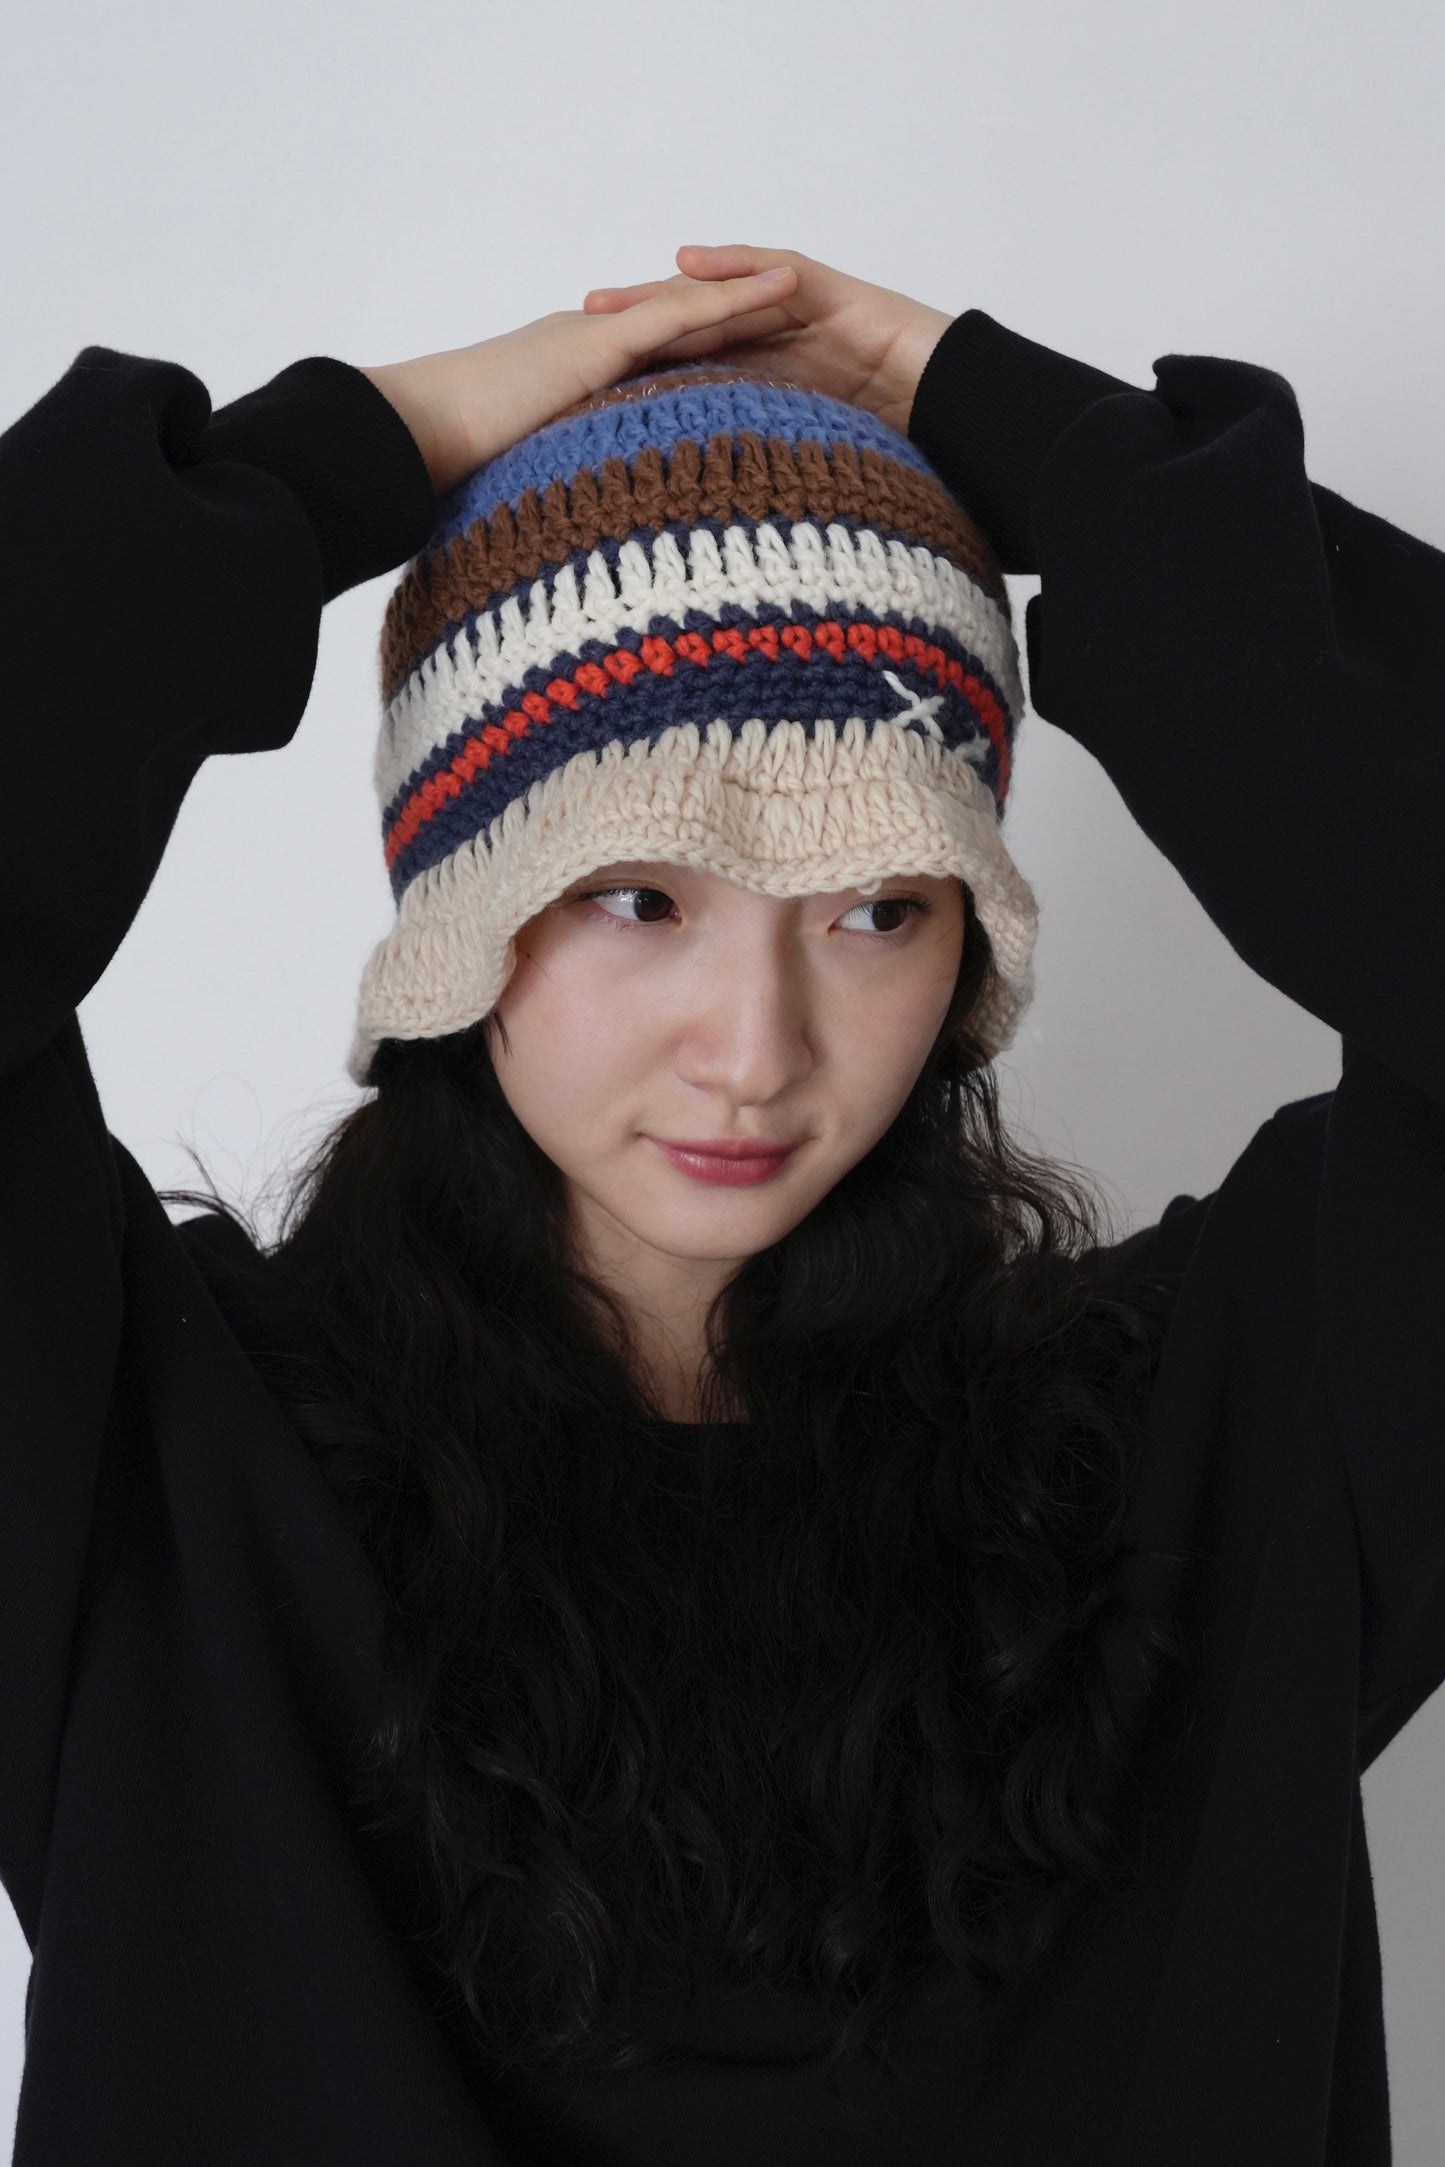 crochet knit hat